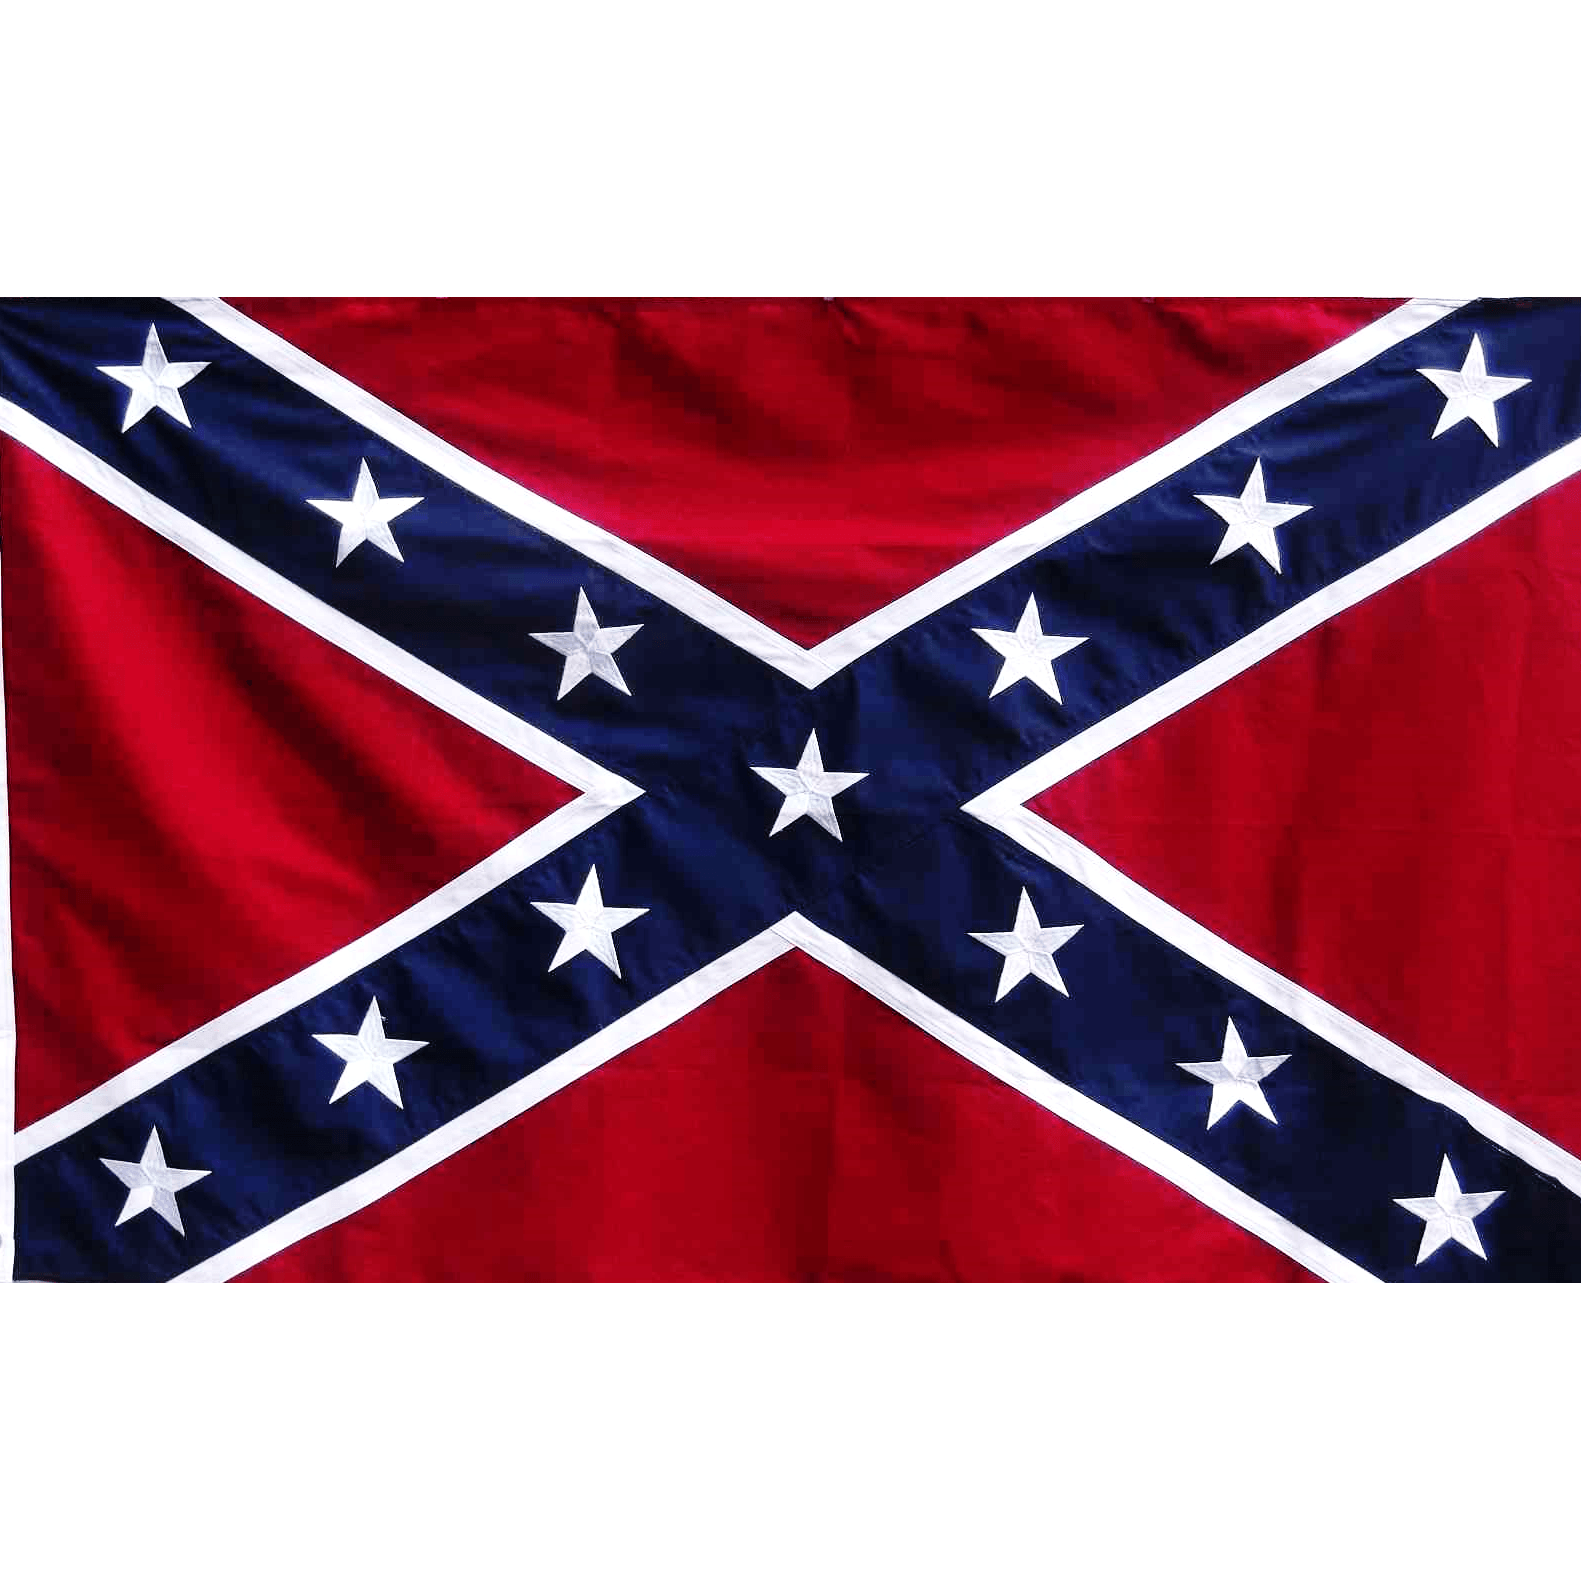 ธงยูเนี่ยนออฟอเมริกา